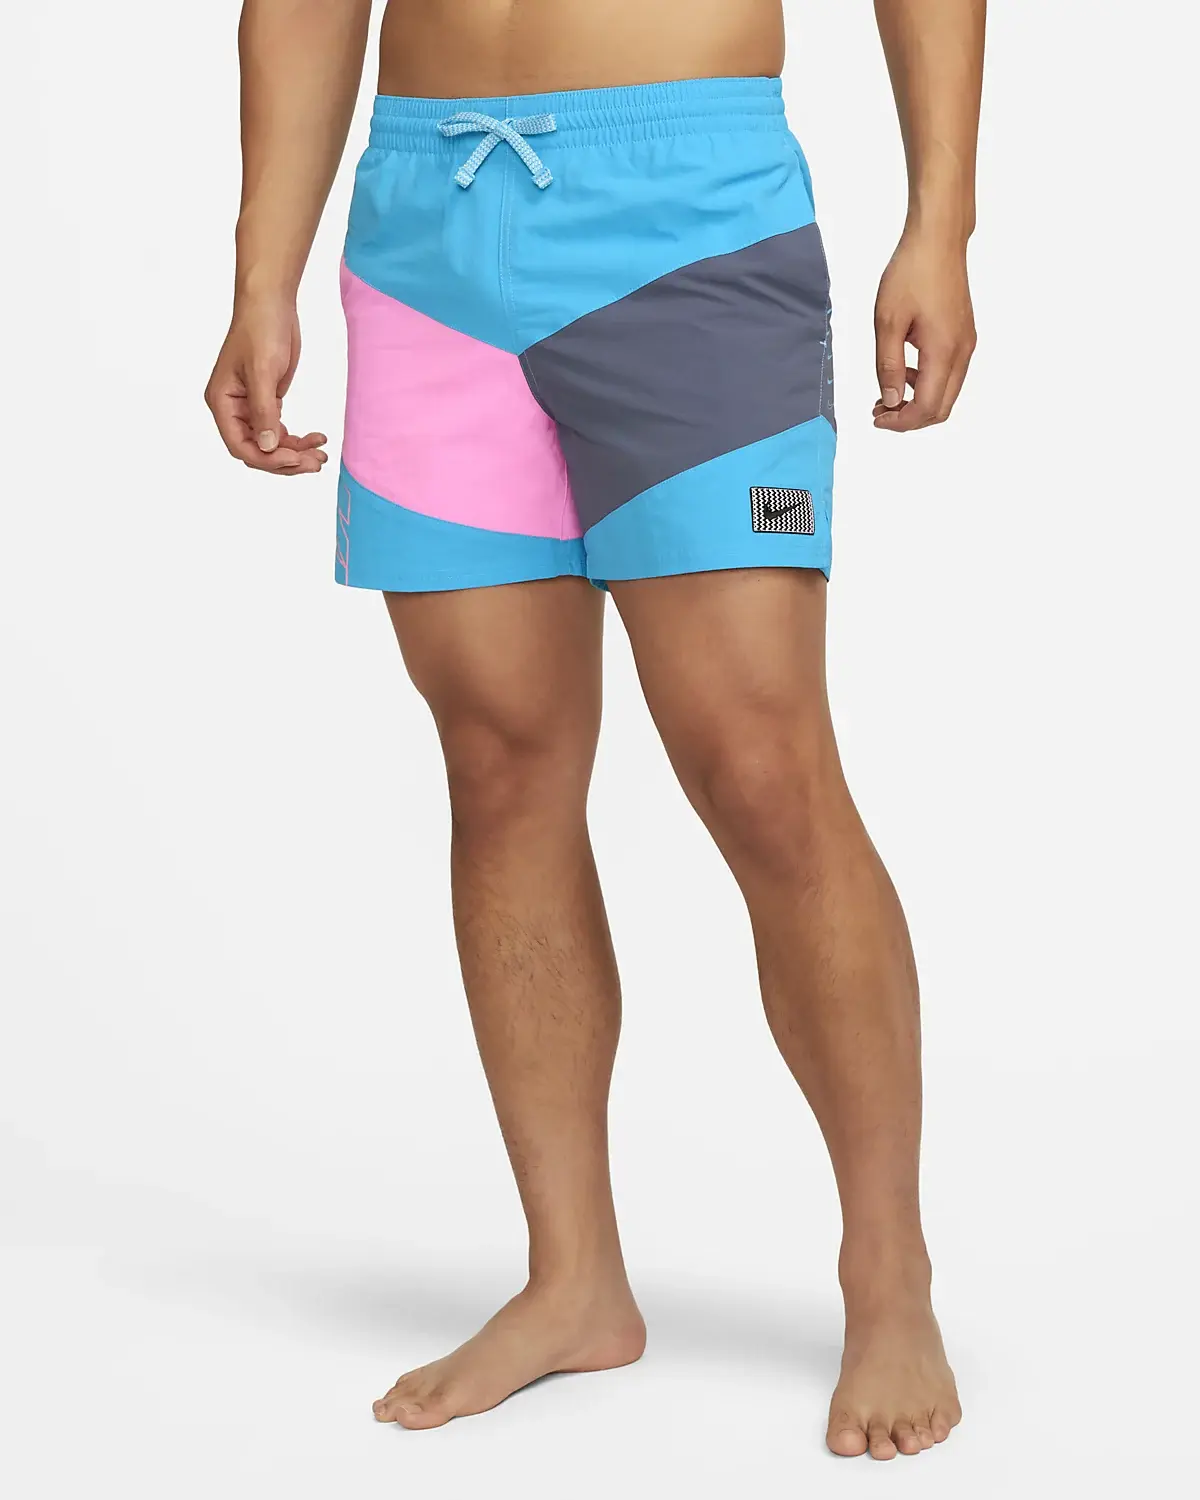 Nike Shorts. 1